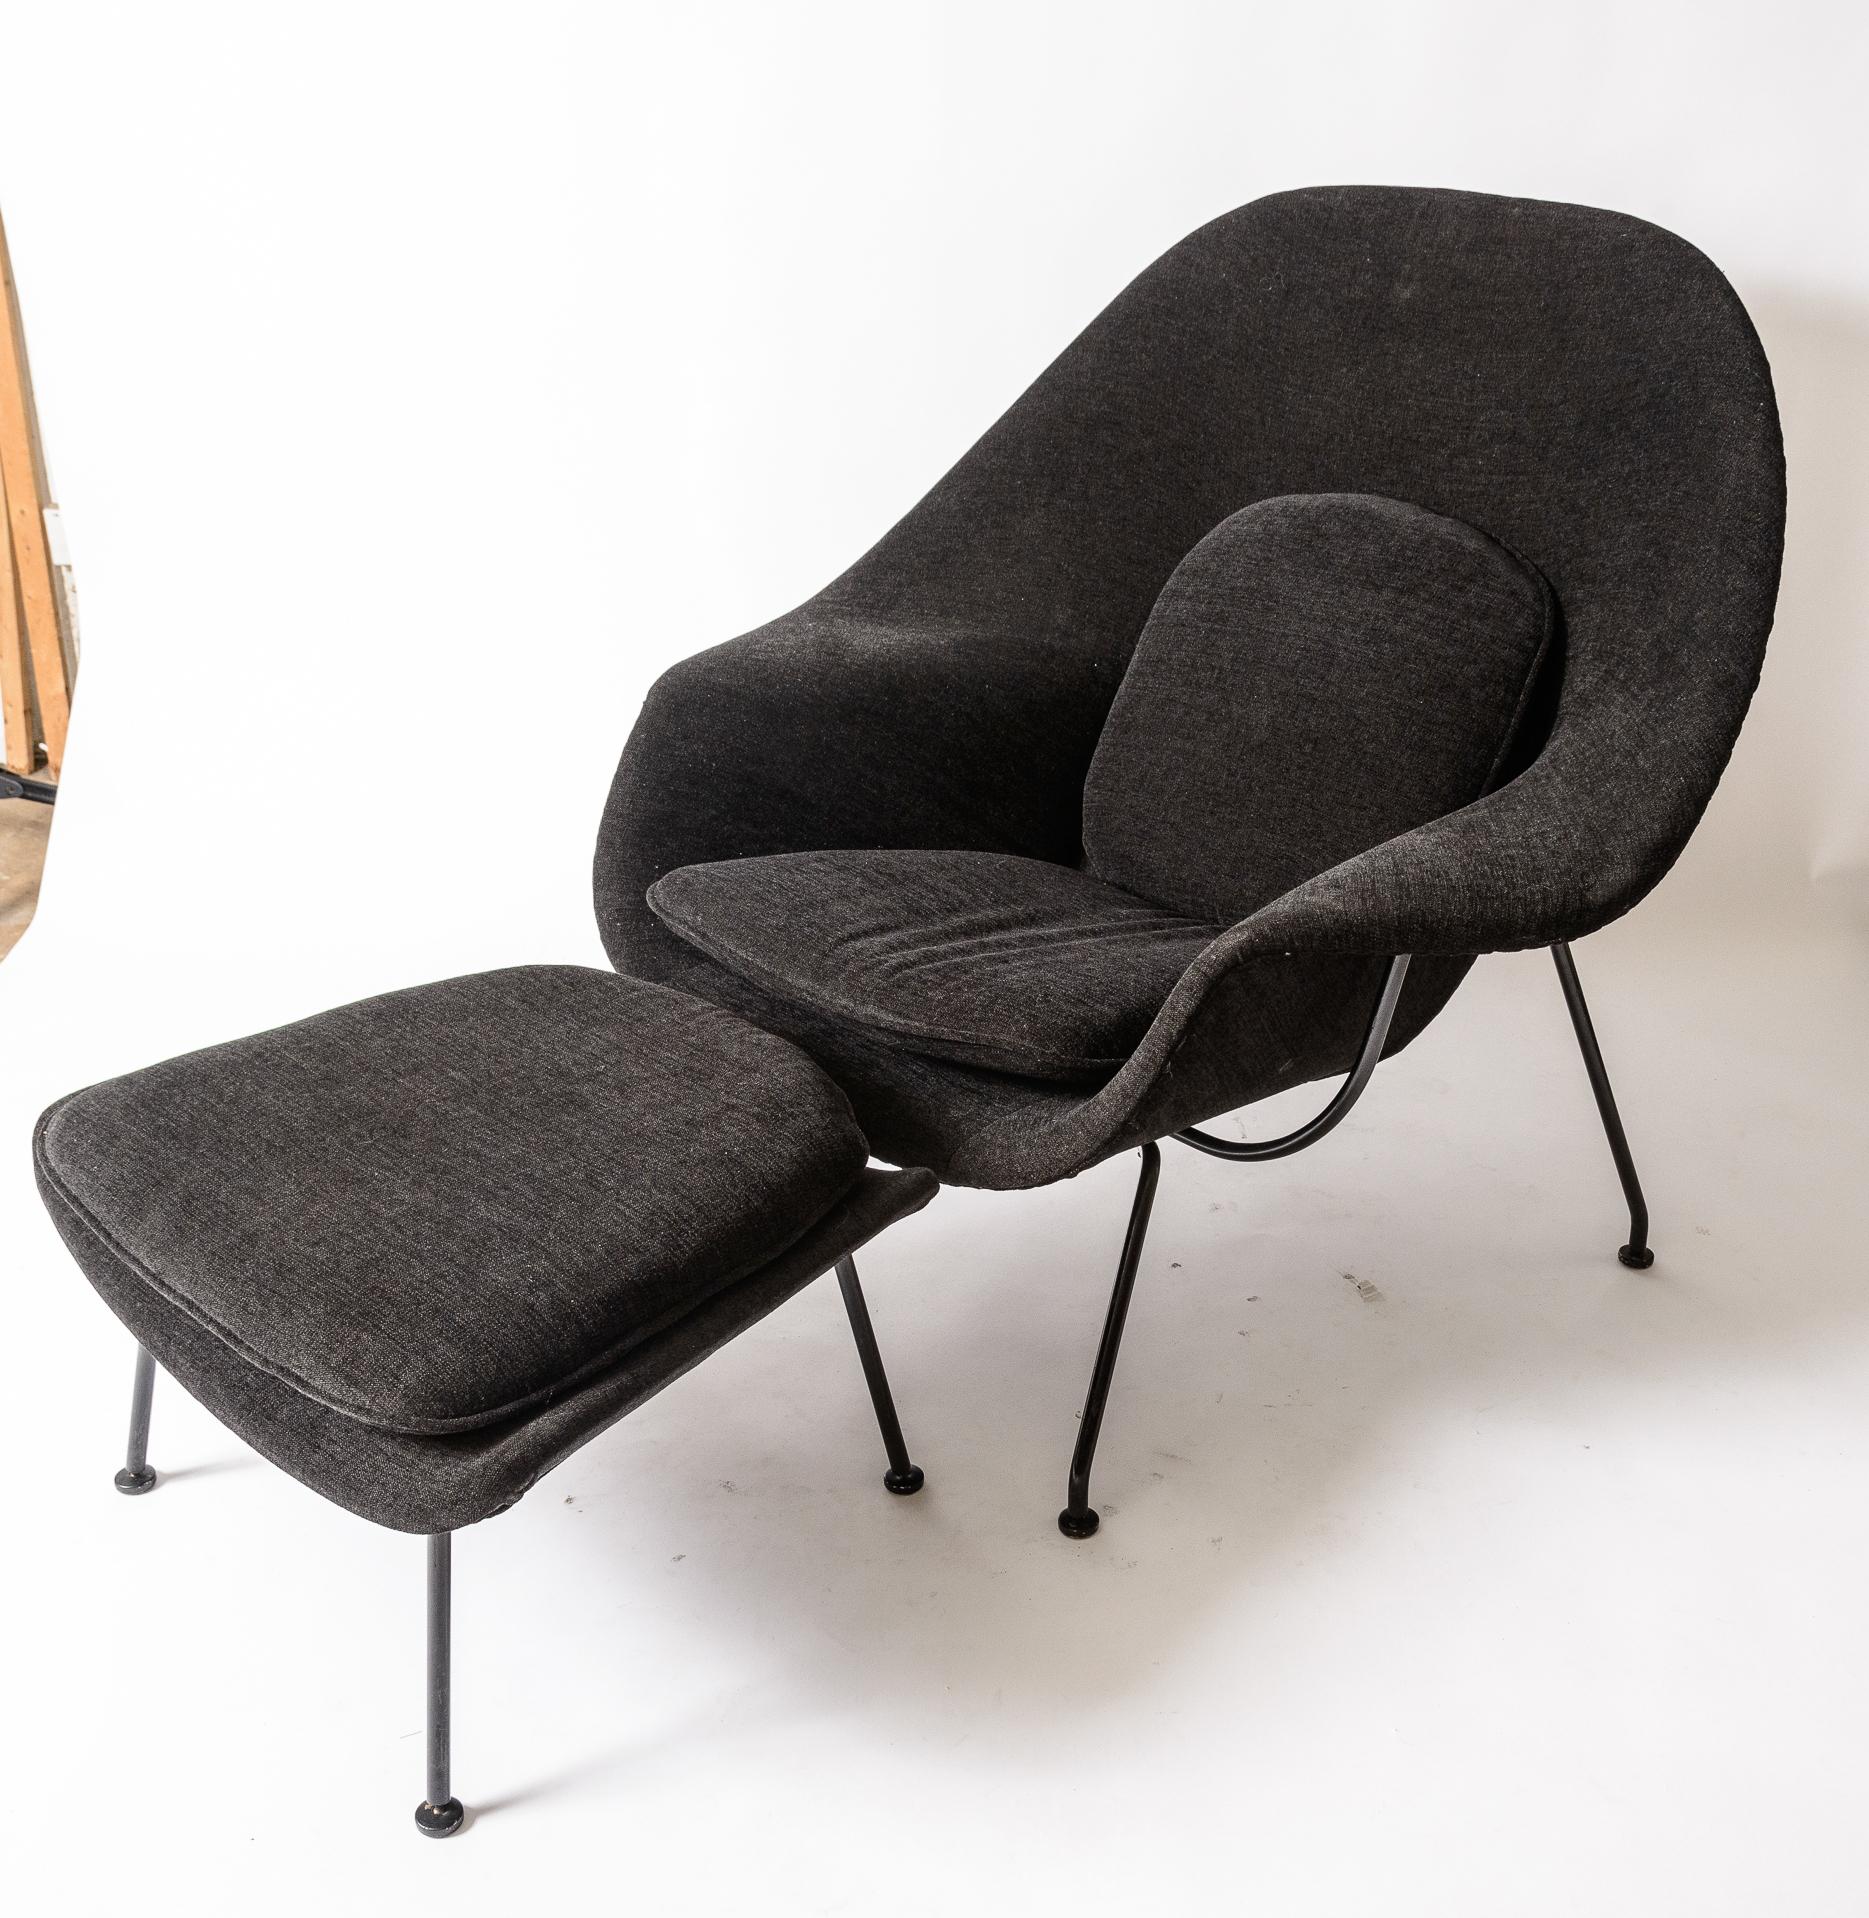 Chaise et pouf Womb d'Eero Saarinen
Production de Knoll à la fin des années 1960
 Remboursement des frais de scolarité
Cadre original en émail noir
La couleur du tissu est noire avec des nuances de gris. 
dernière photo ,j'ai placé un t-shirt gris